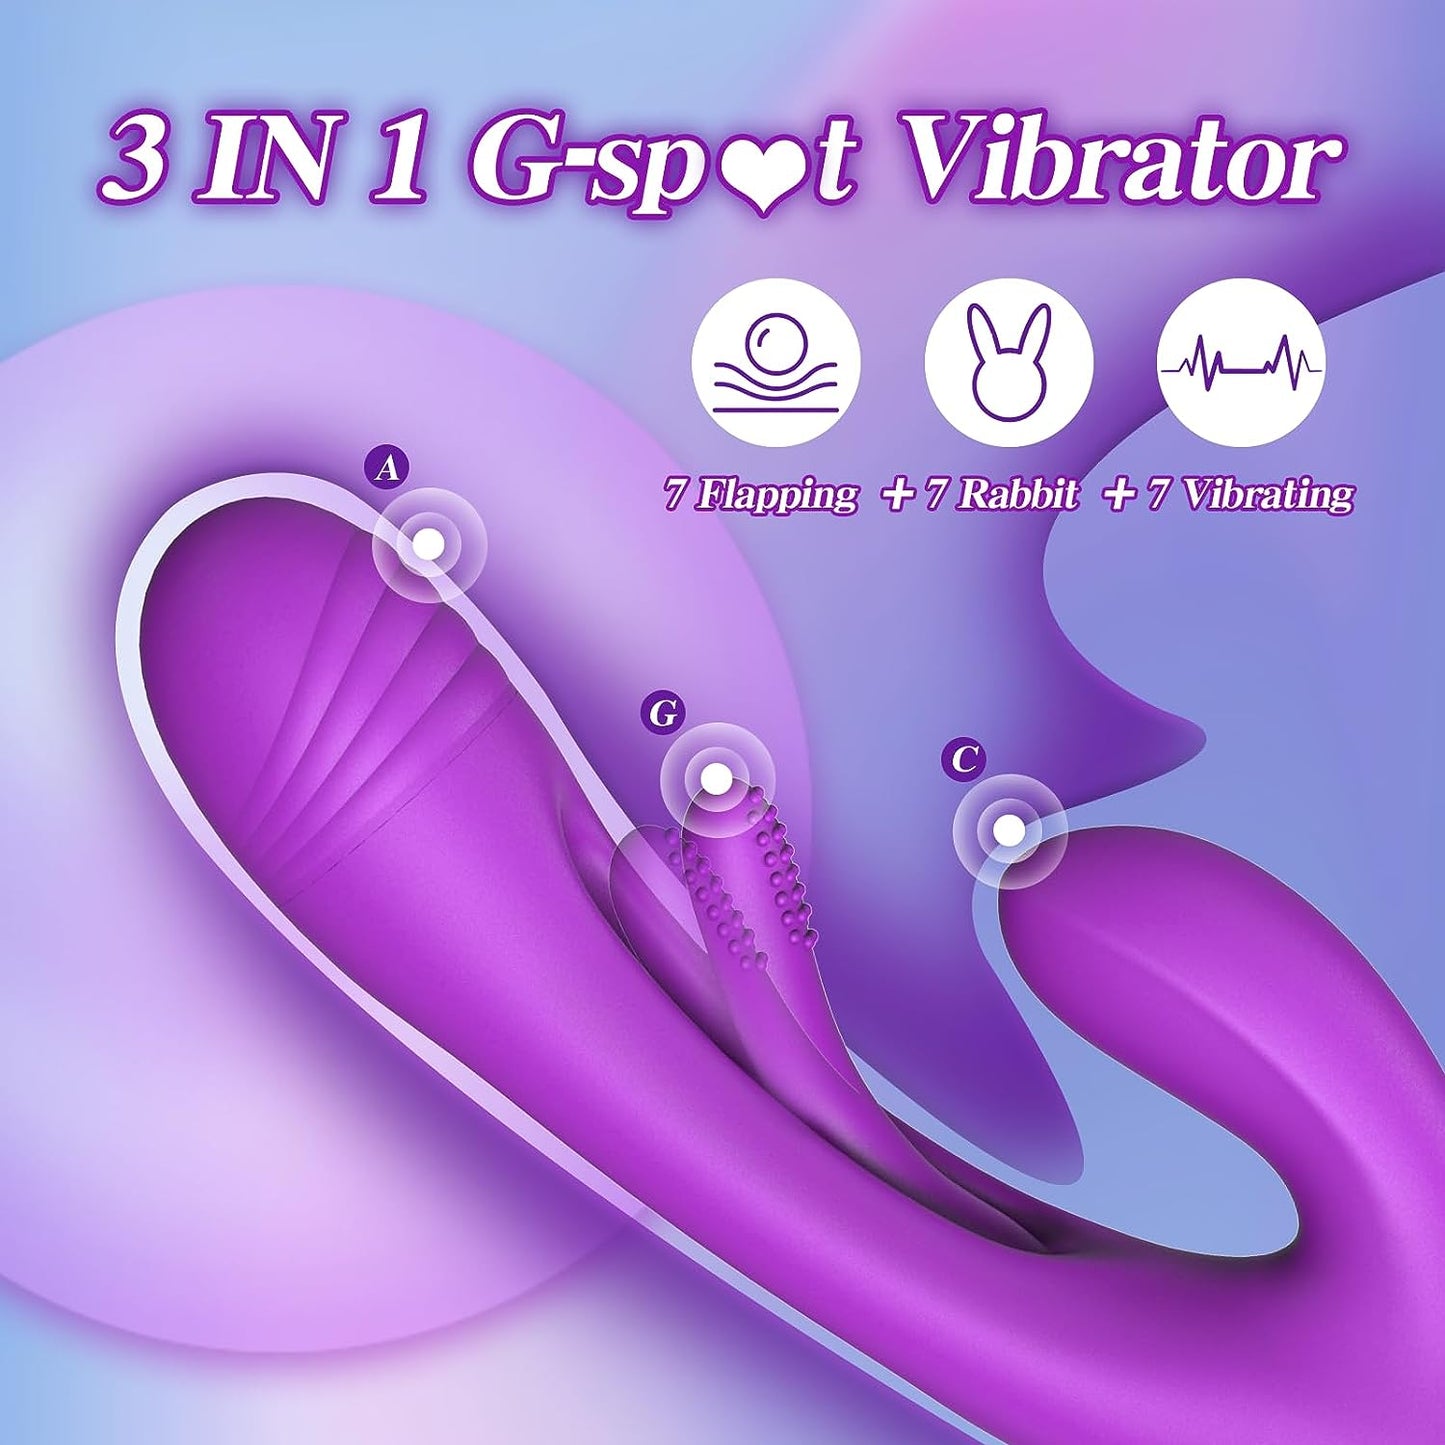 G-Spot fladderende vibratordildo met 7 trillingen en 7 fluttermodi 